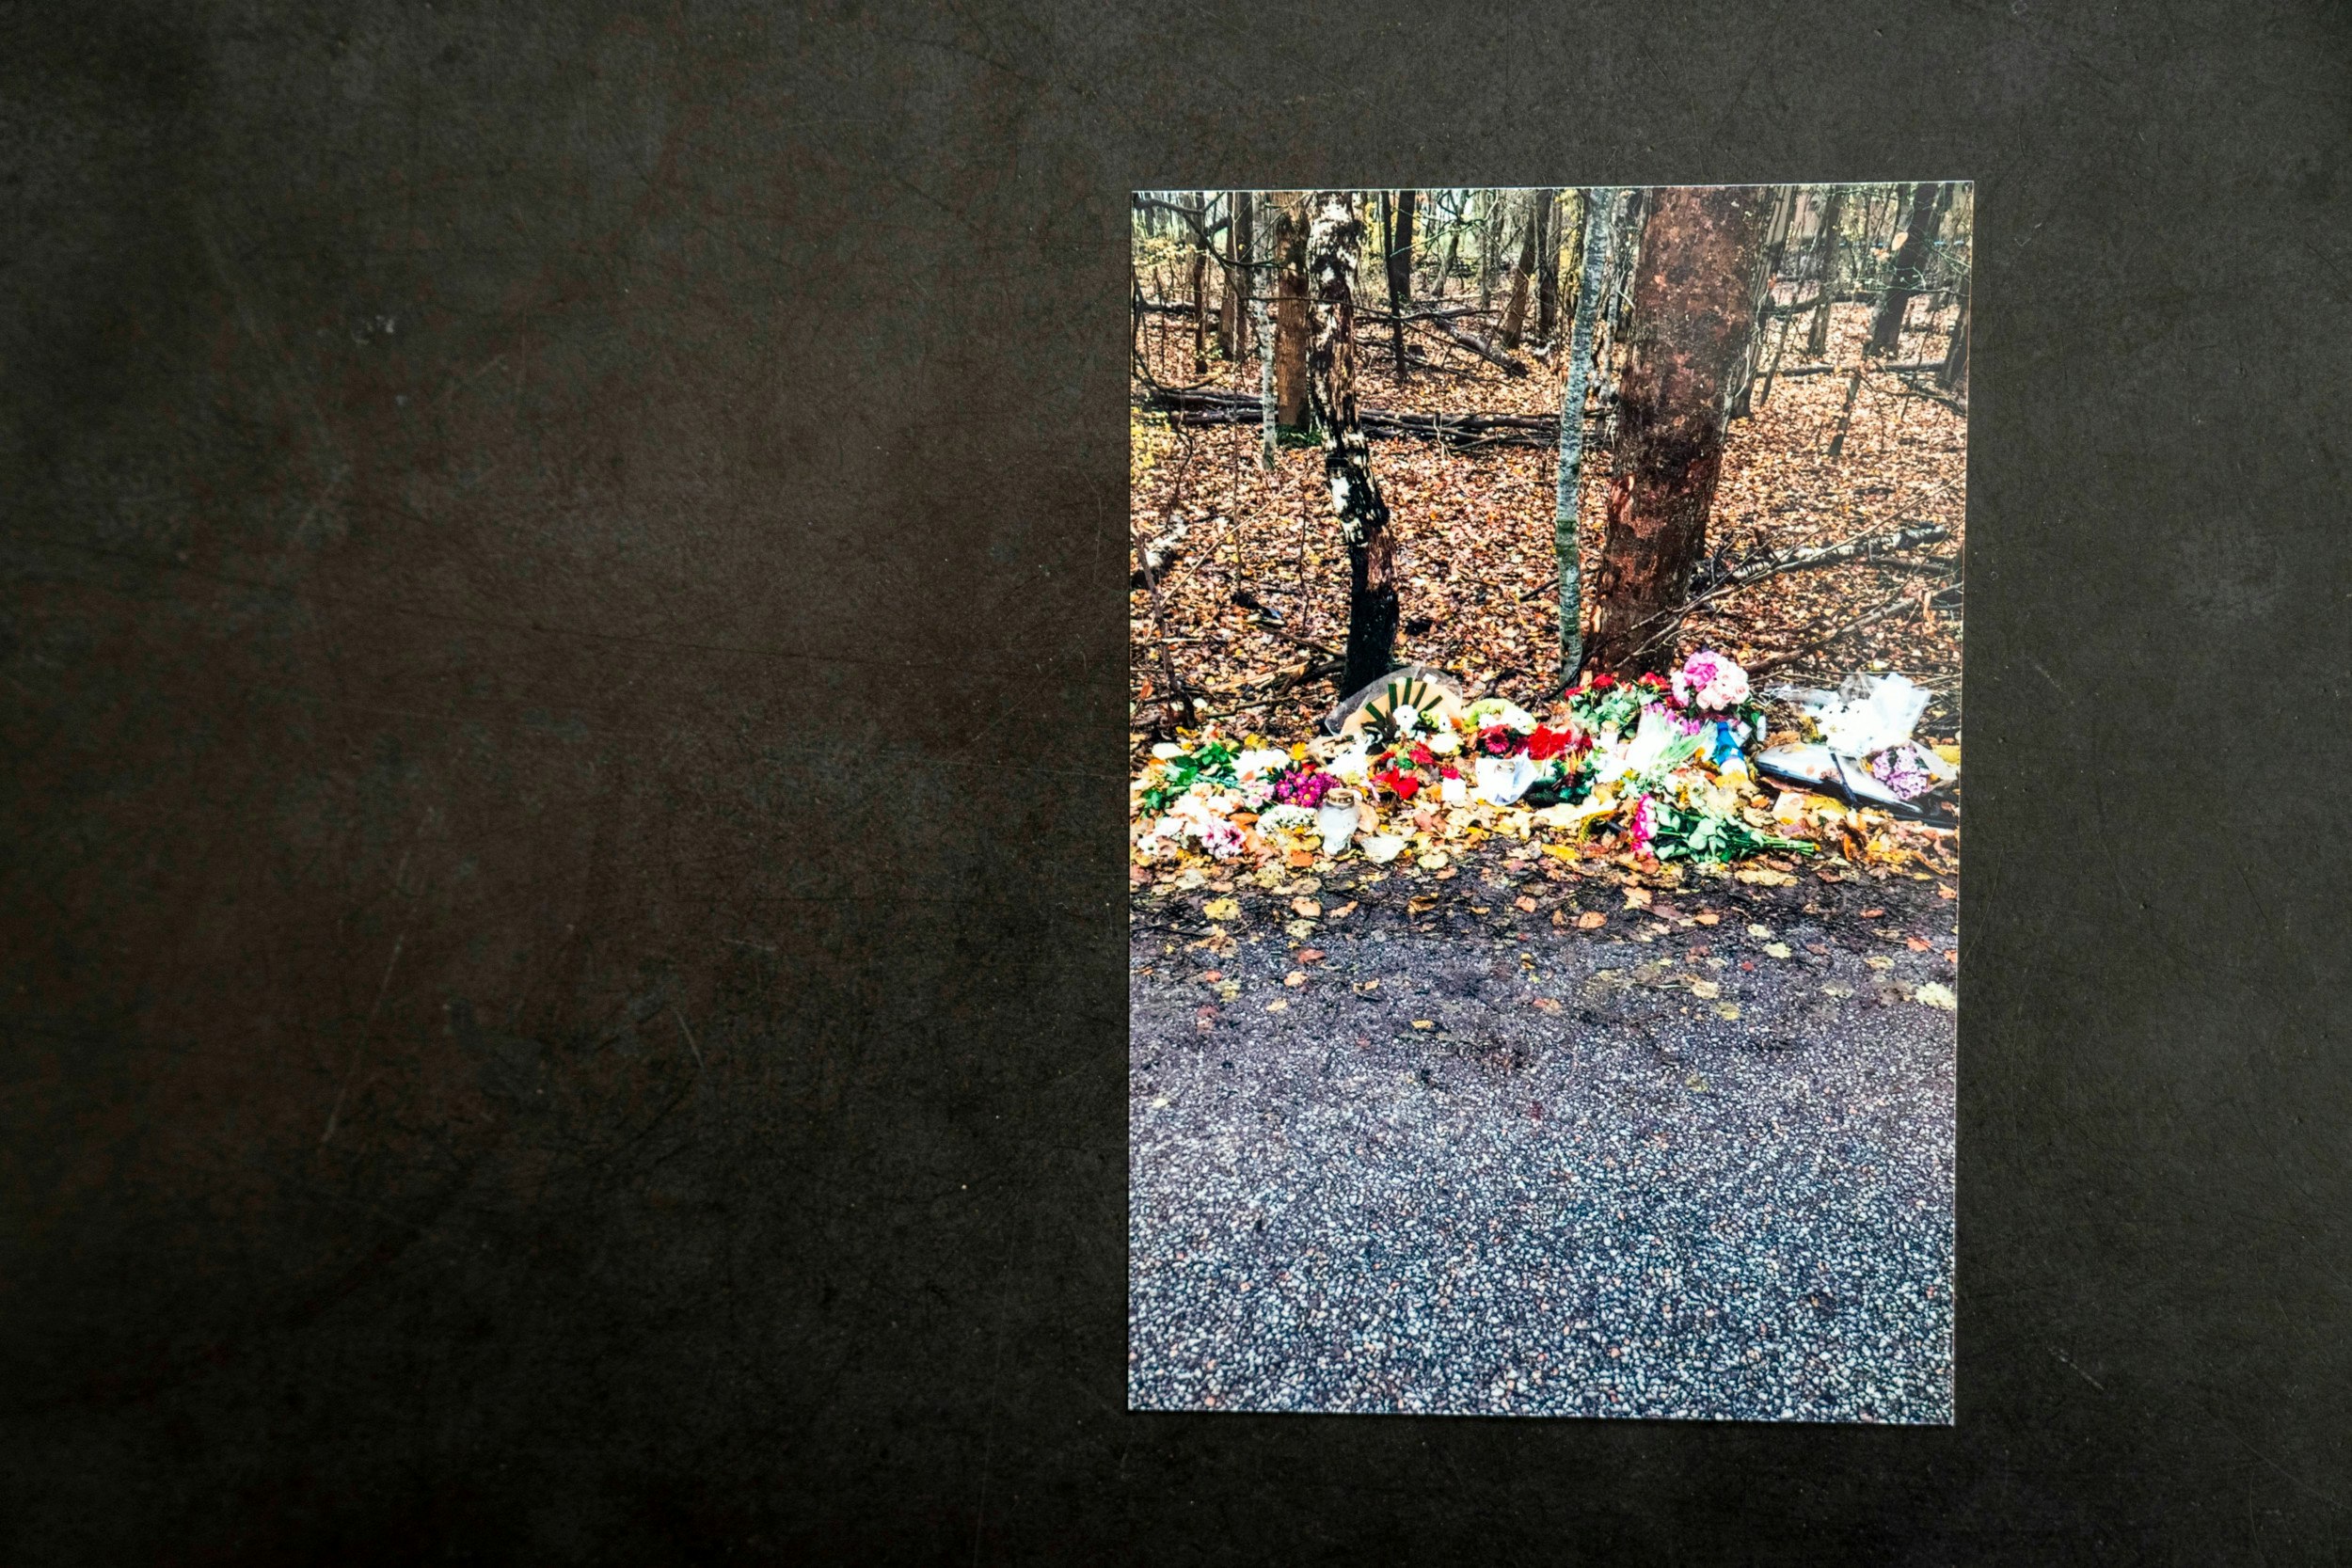 I dagene efter ulykken blev der lagt adskillige blomsterbuketter foran træet, som Mikkel blev dræbt imod.